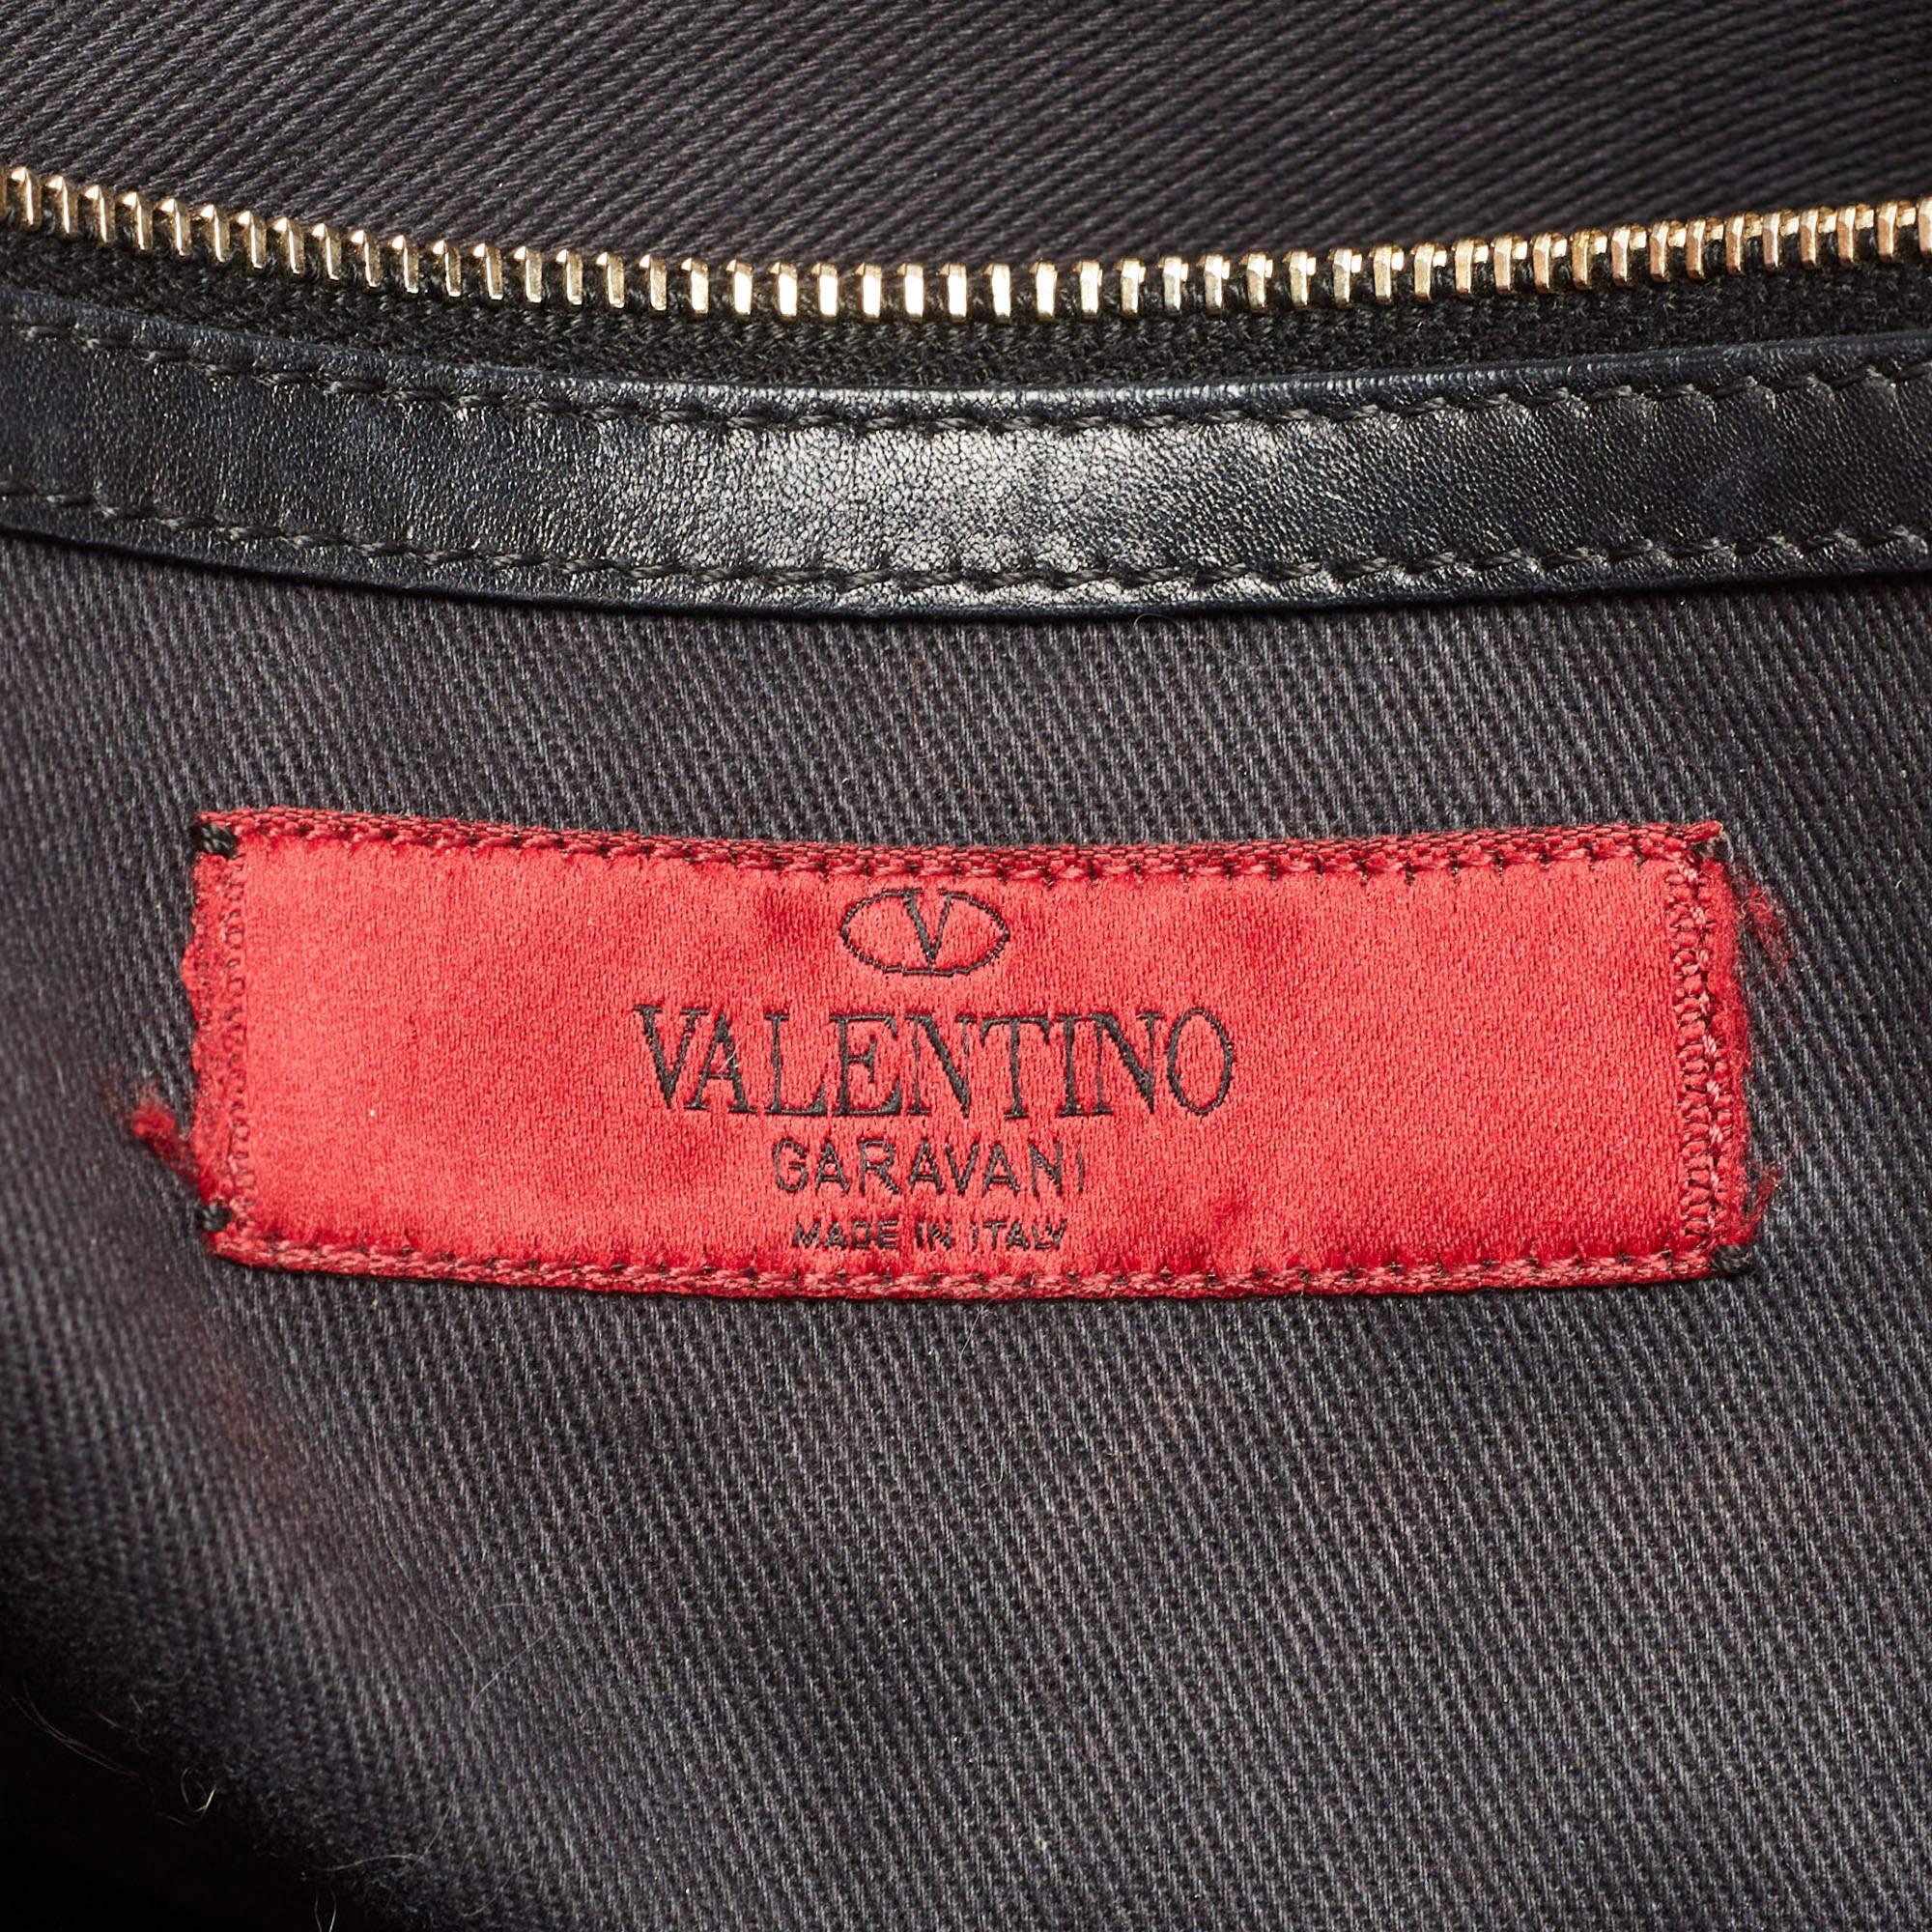 Valentino Black Leather Rockstud Dome Tote 8